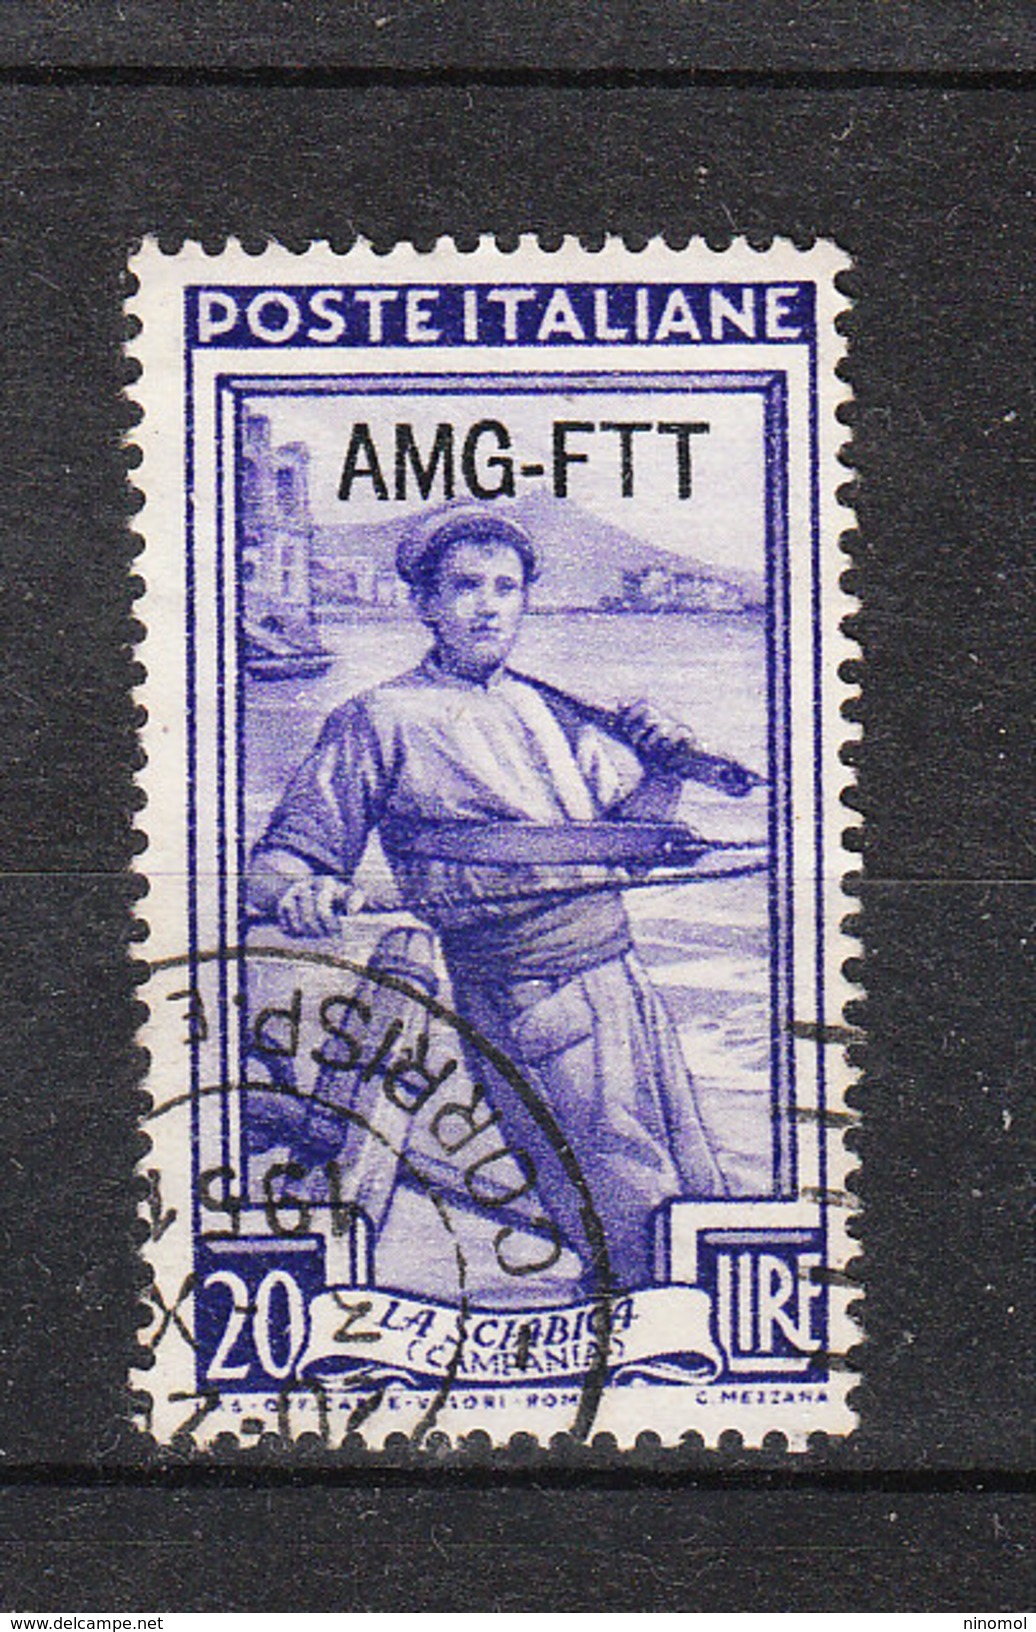 Trieste A   -   1950.  Italia Al Lavoro.Pescatore. Fisherman.  MNH - Impuestos